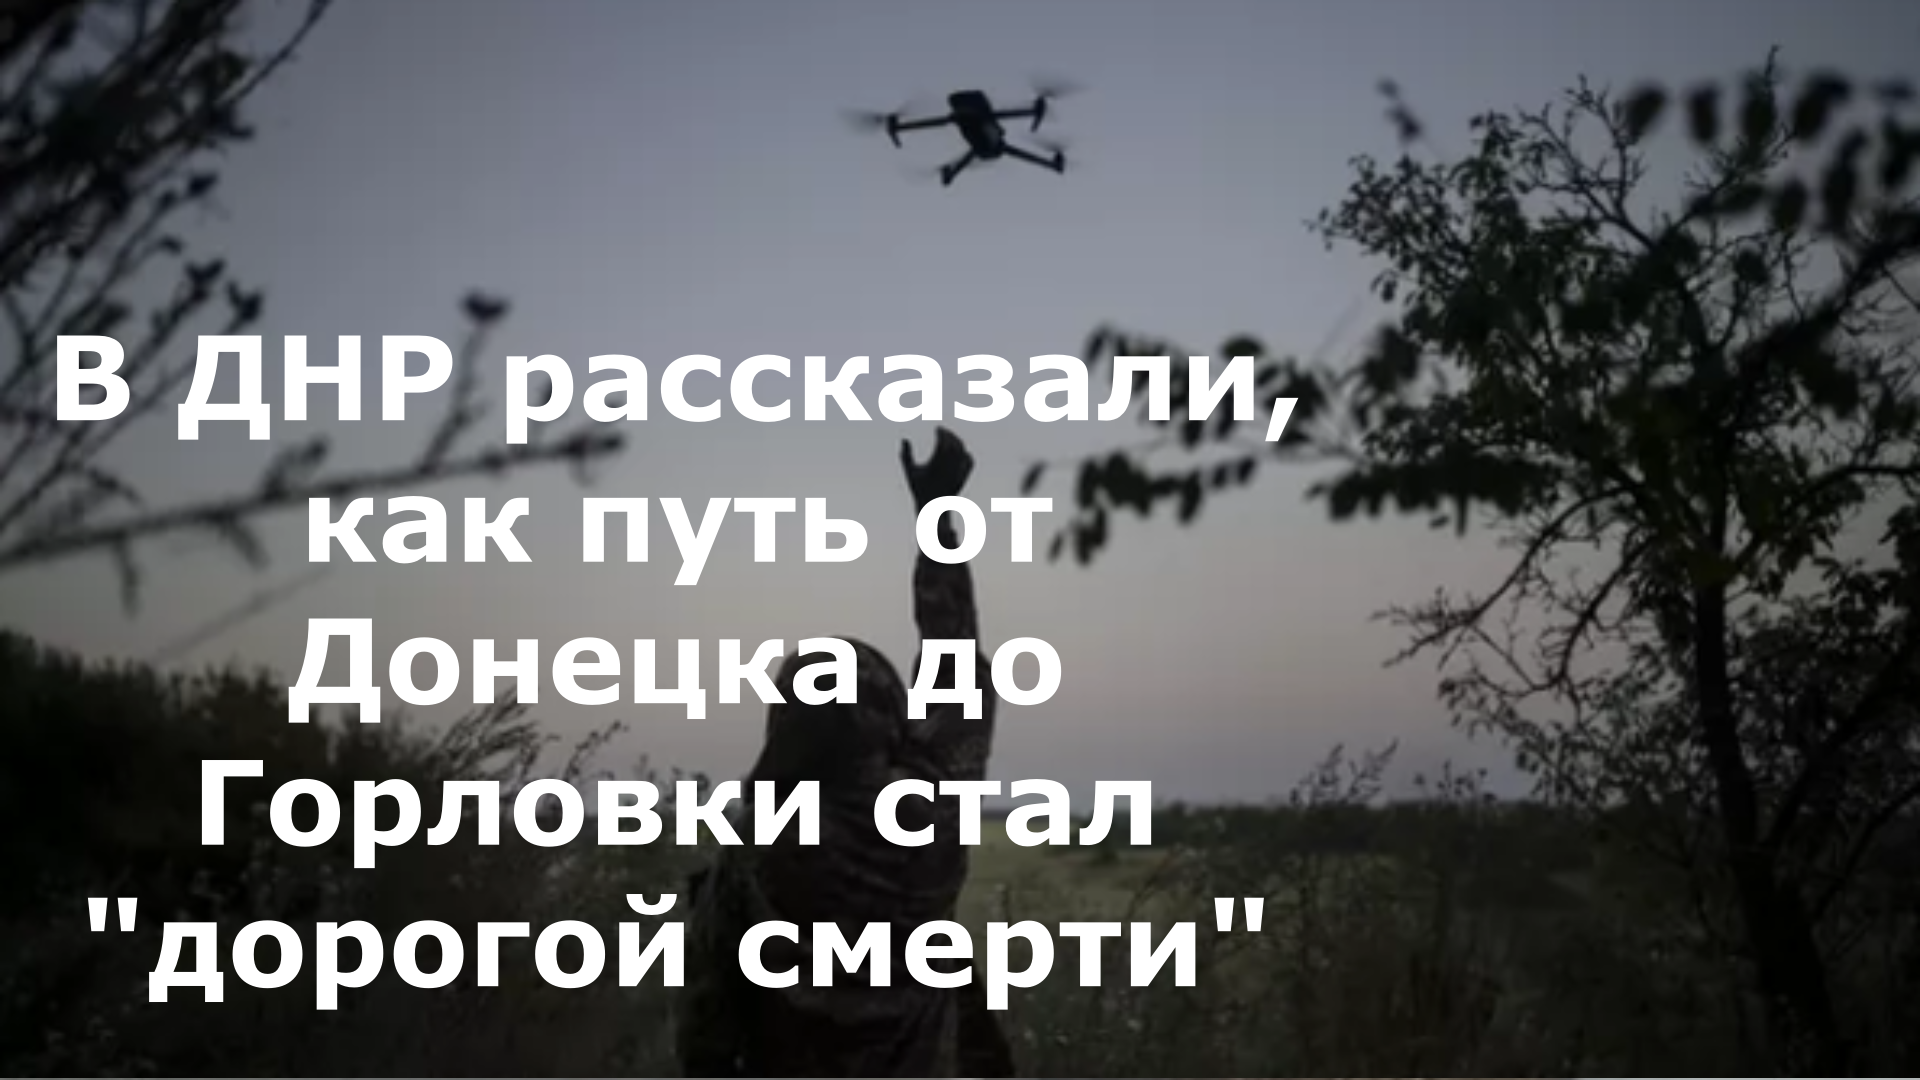 В ДНР рассказали, как путь от Донецка до Горловки стал "дорогой смерти"